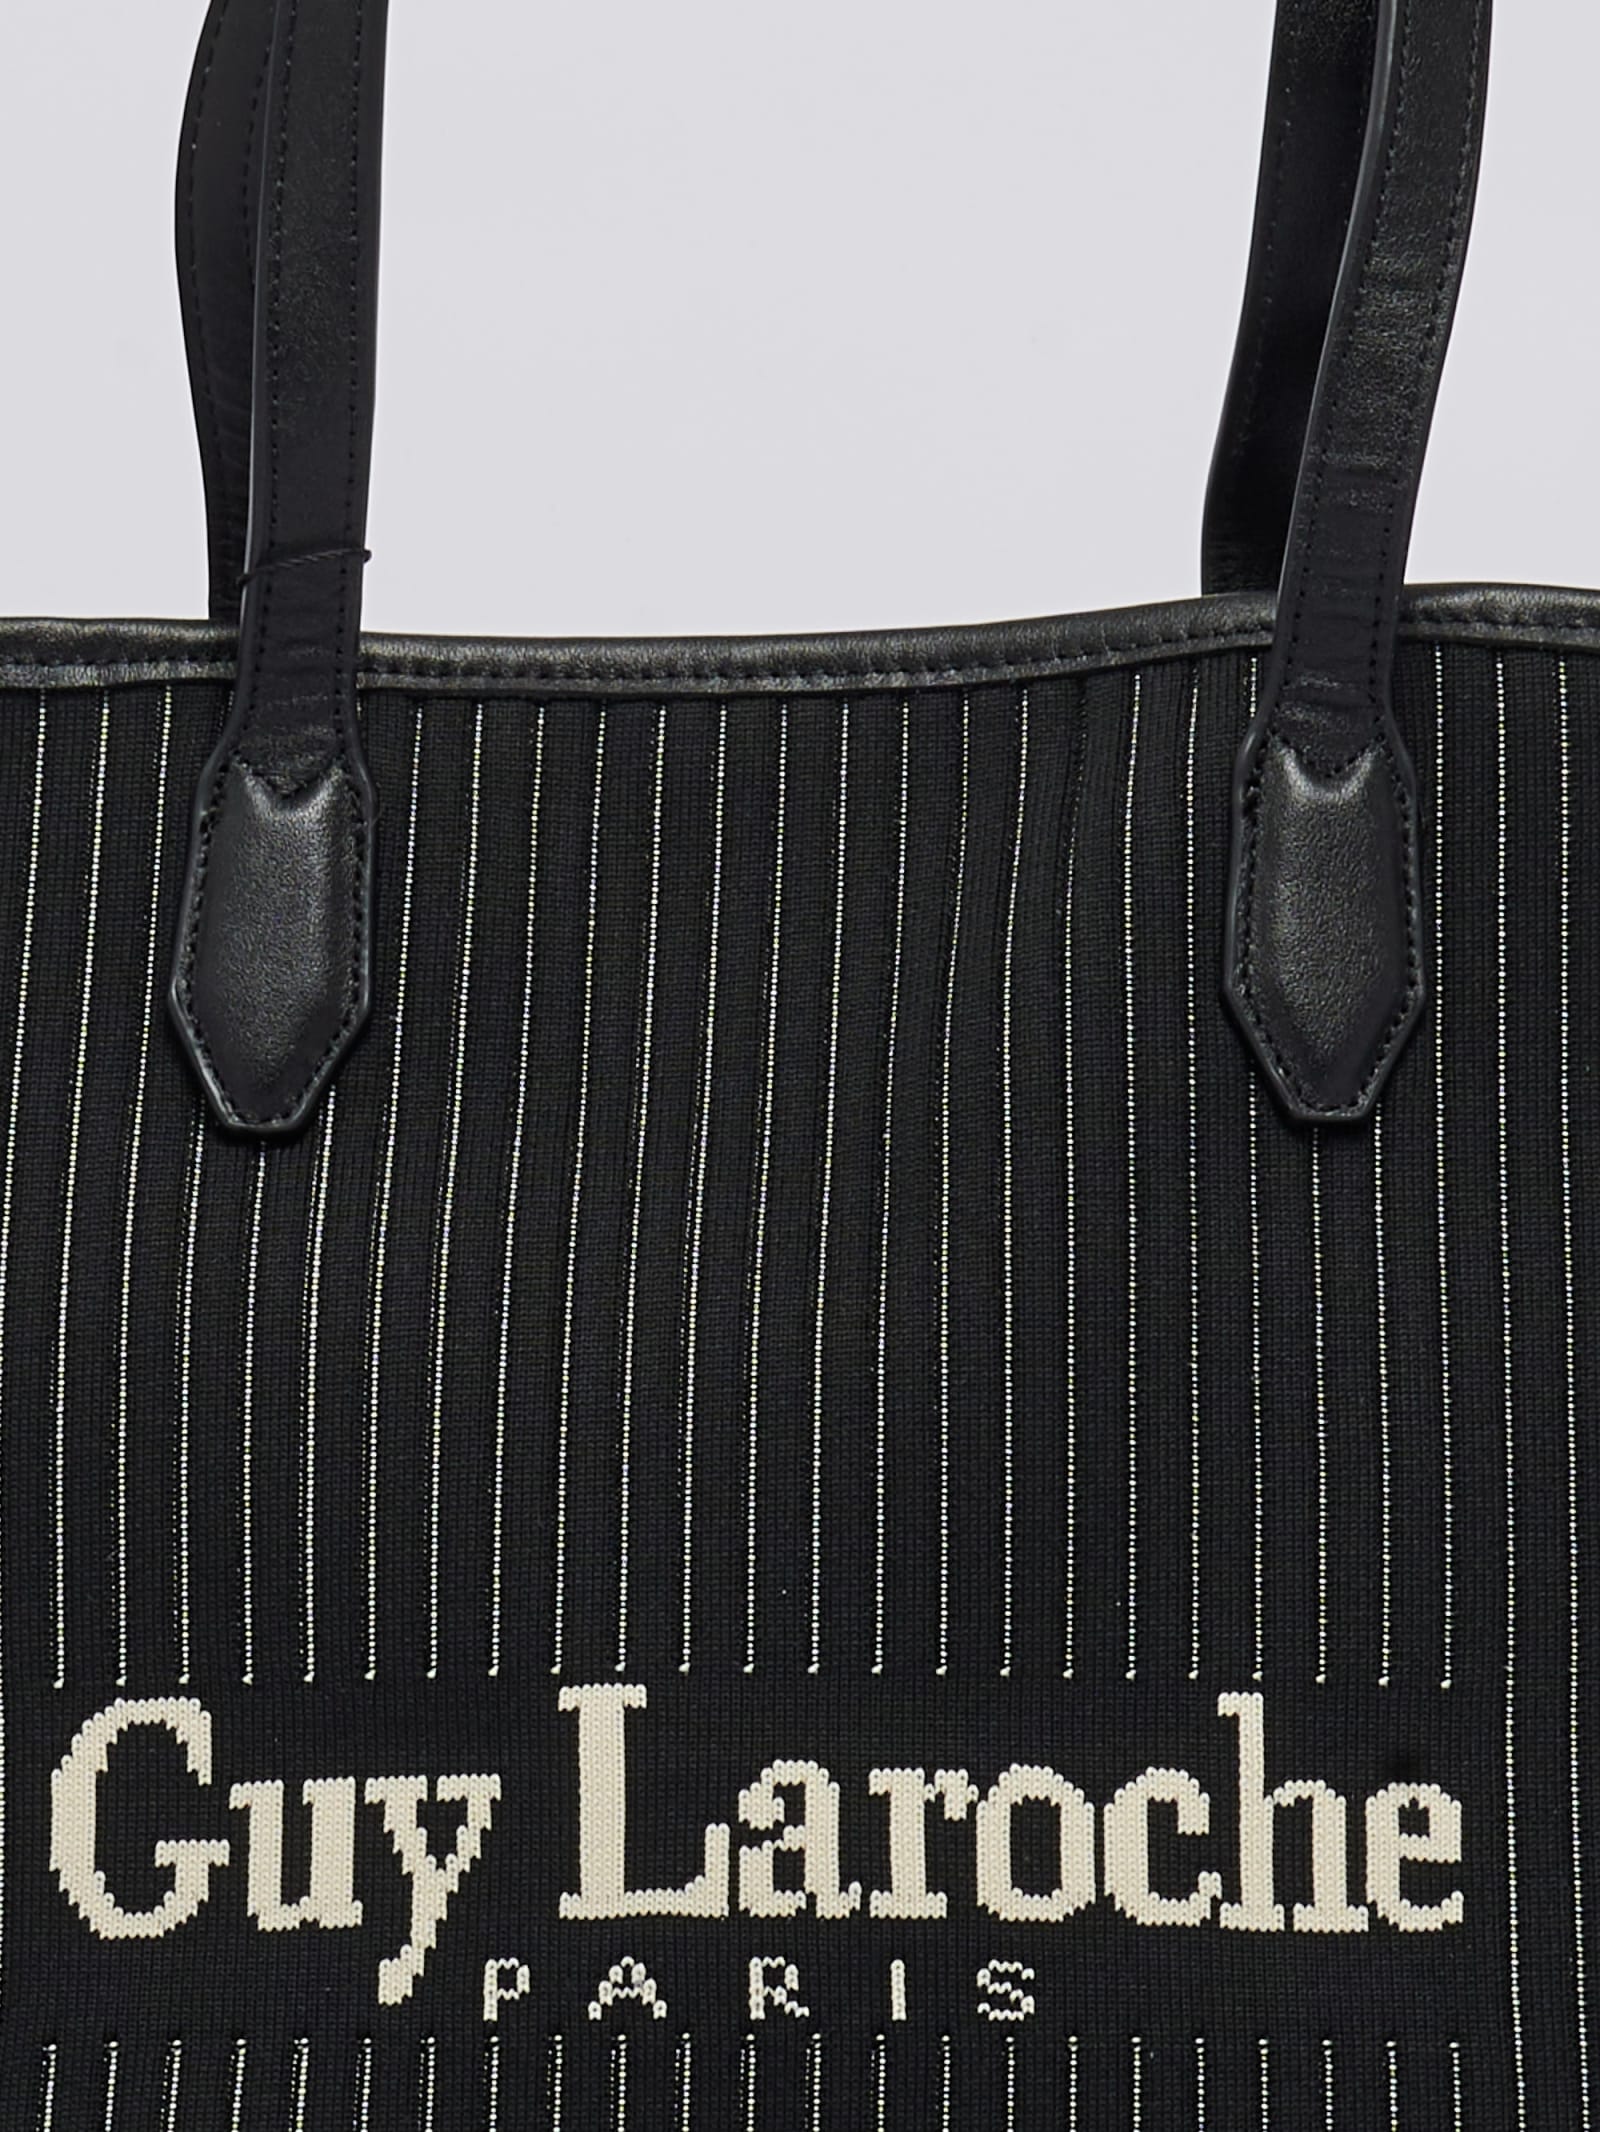 Guy Laroche Logoed Shoulder Bag in White